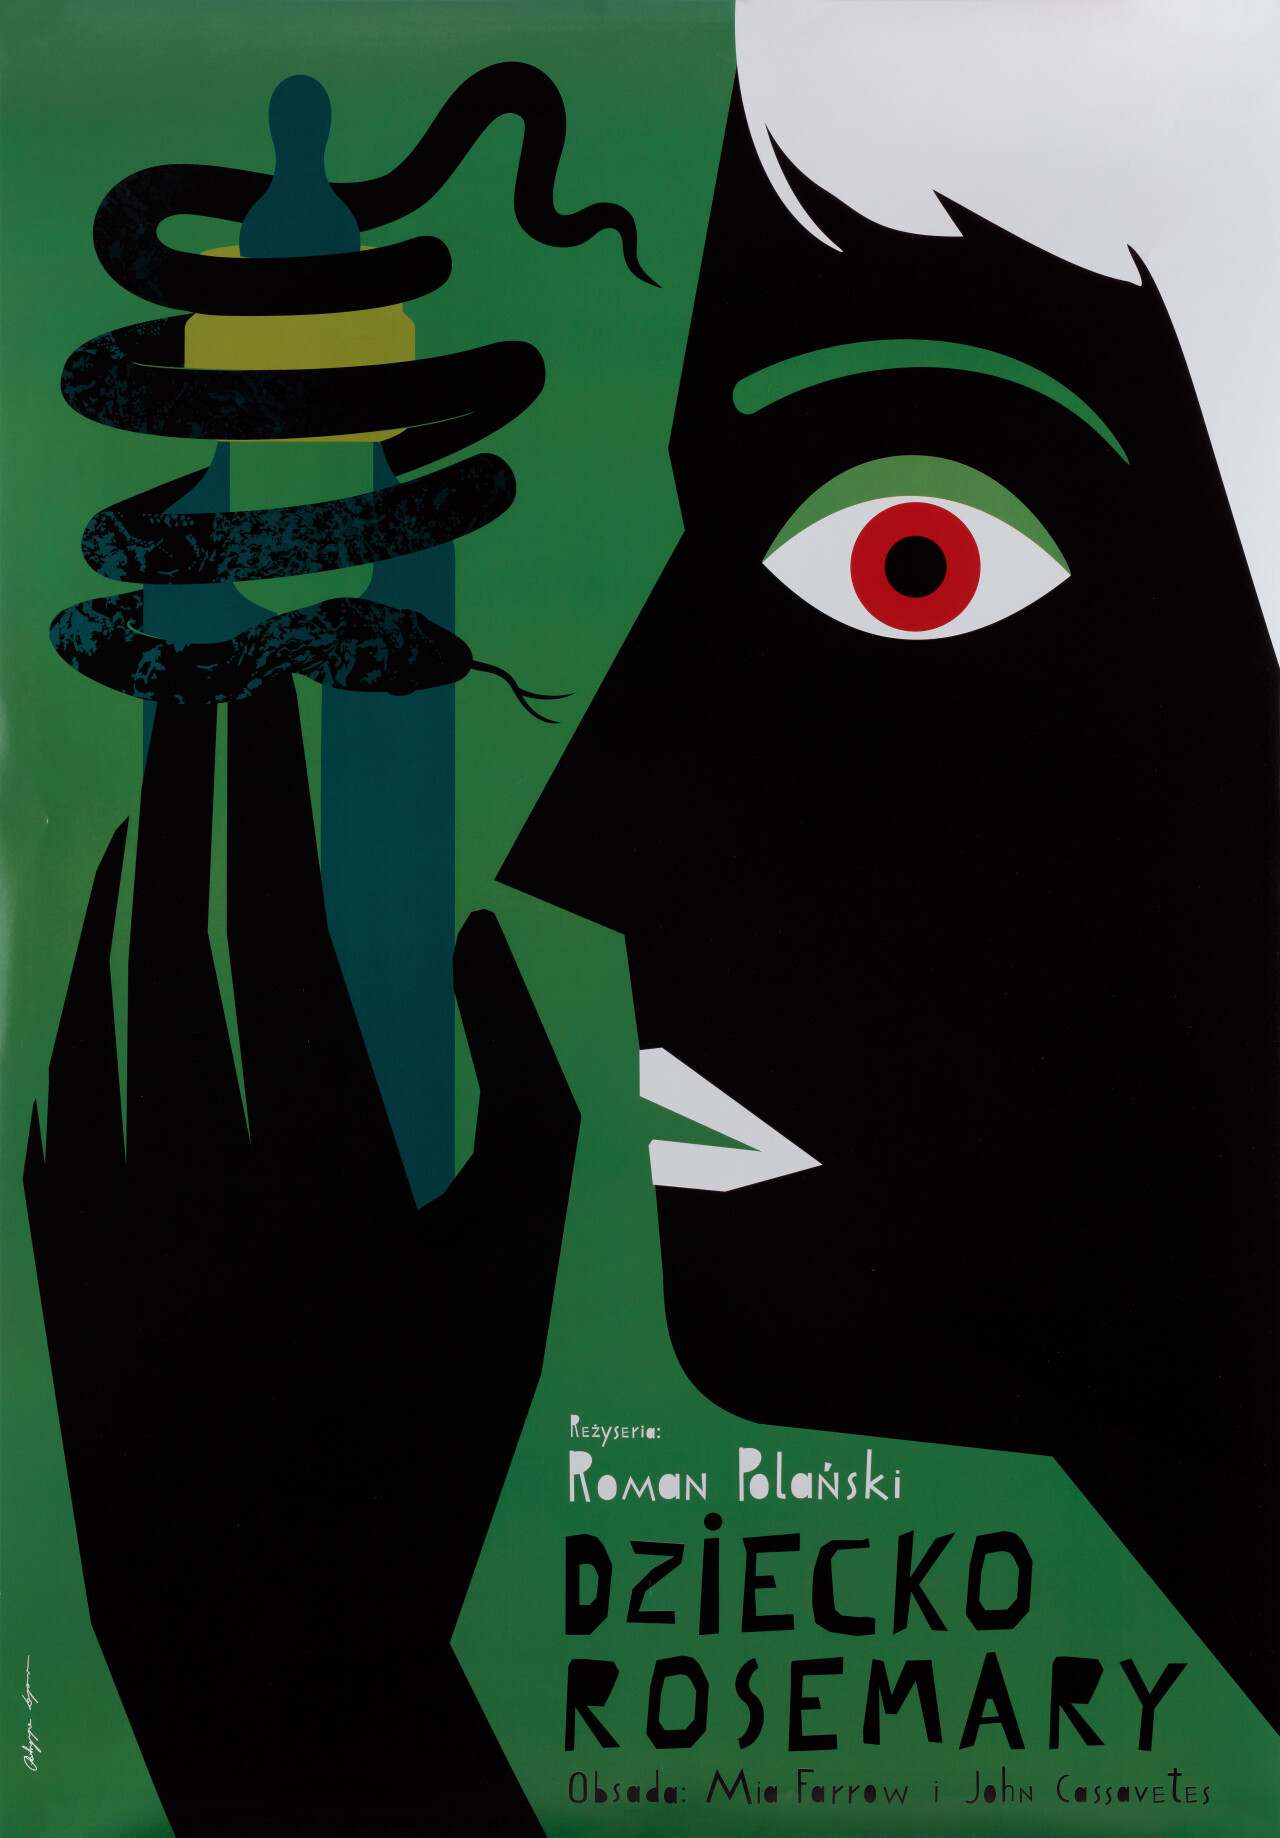 Ребенок Розмари (Rosemarys Baby, 1968), режиссёр Роман Полански, польский постер к фильму, автор Патриция Лонгава (ужасы, 2019 год)